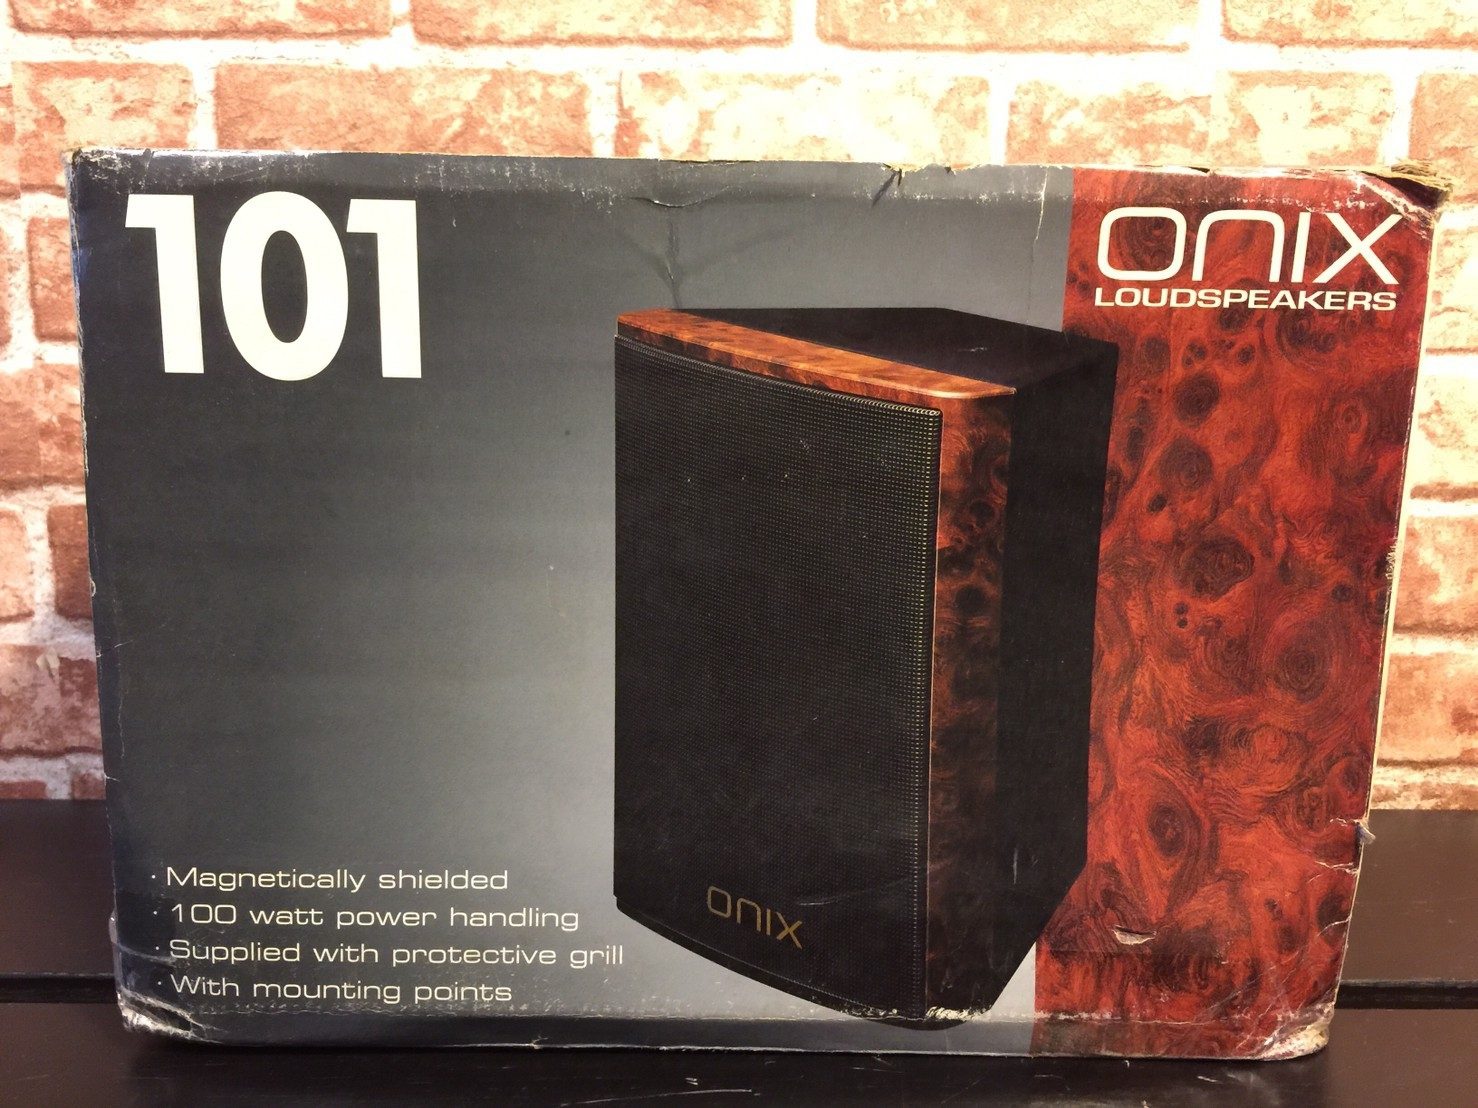 二手匯報no 1153 Onix 101 喇叭 對 原價 6600 元 二手 3000 元 阿通伯樂器